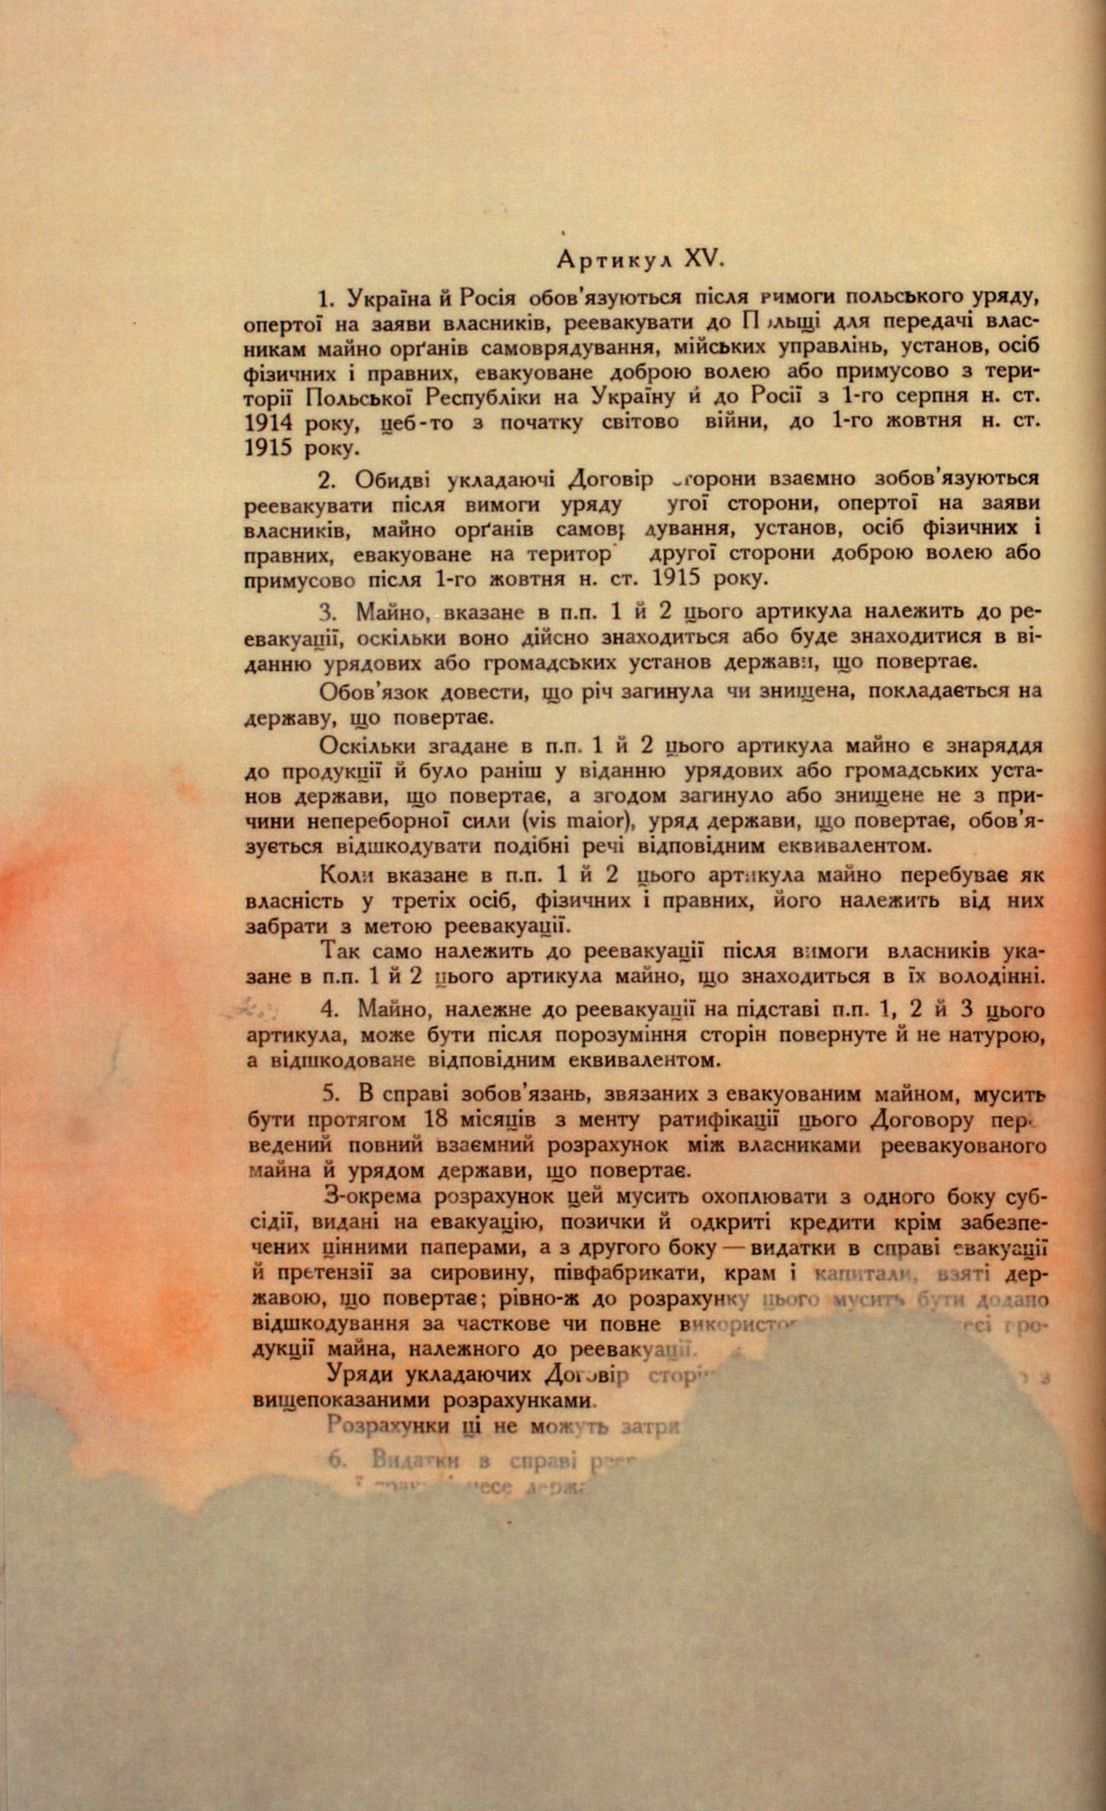 Traktat Pokoju między Polską a Rosją i Ukrainą podpisany w Rydze dnia 18 marca 1921 roku, s. 48, MSZ, sygn. 6739.